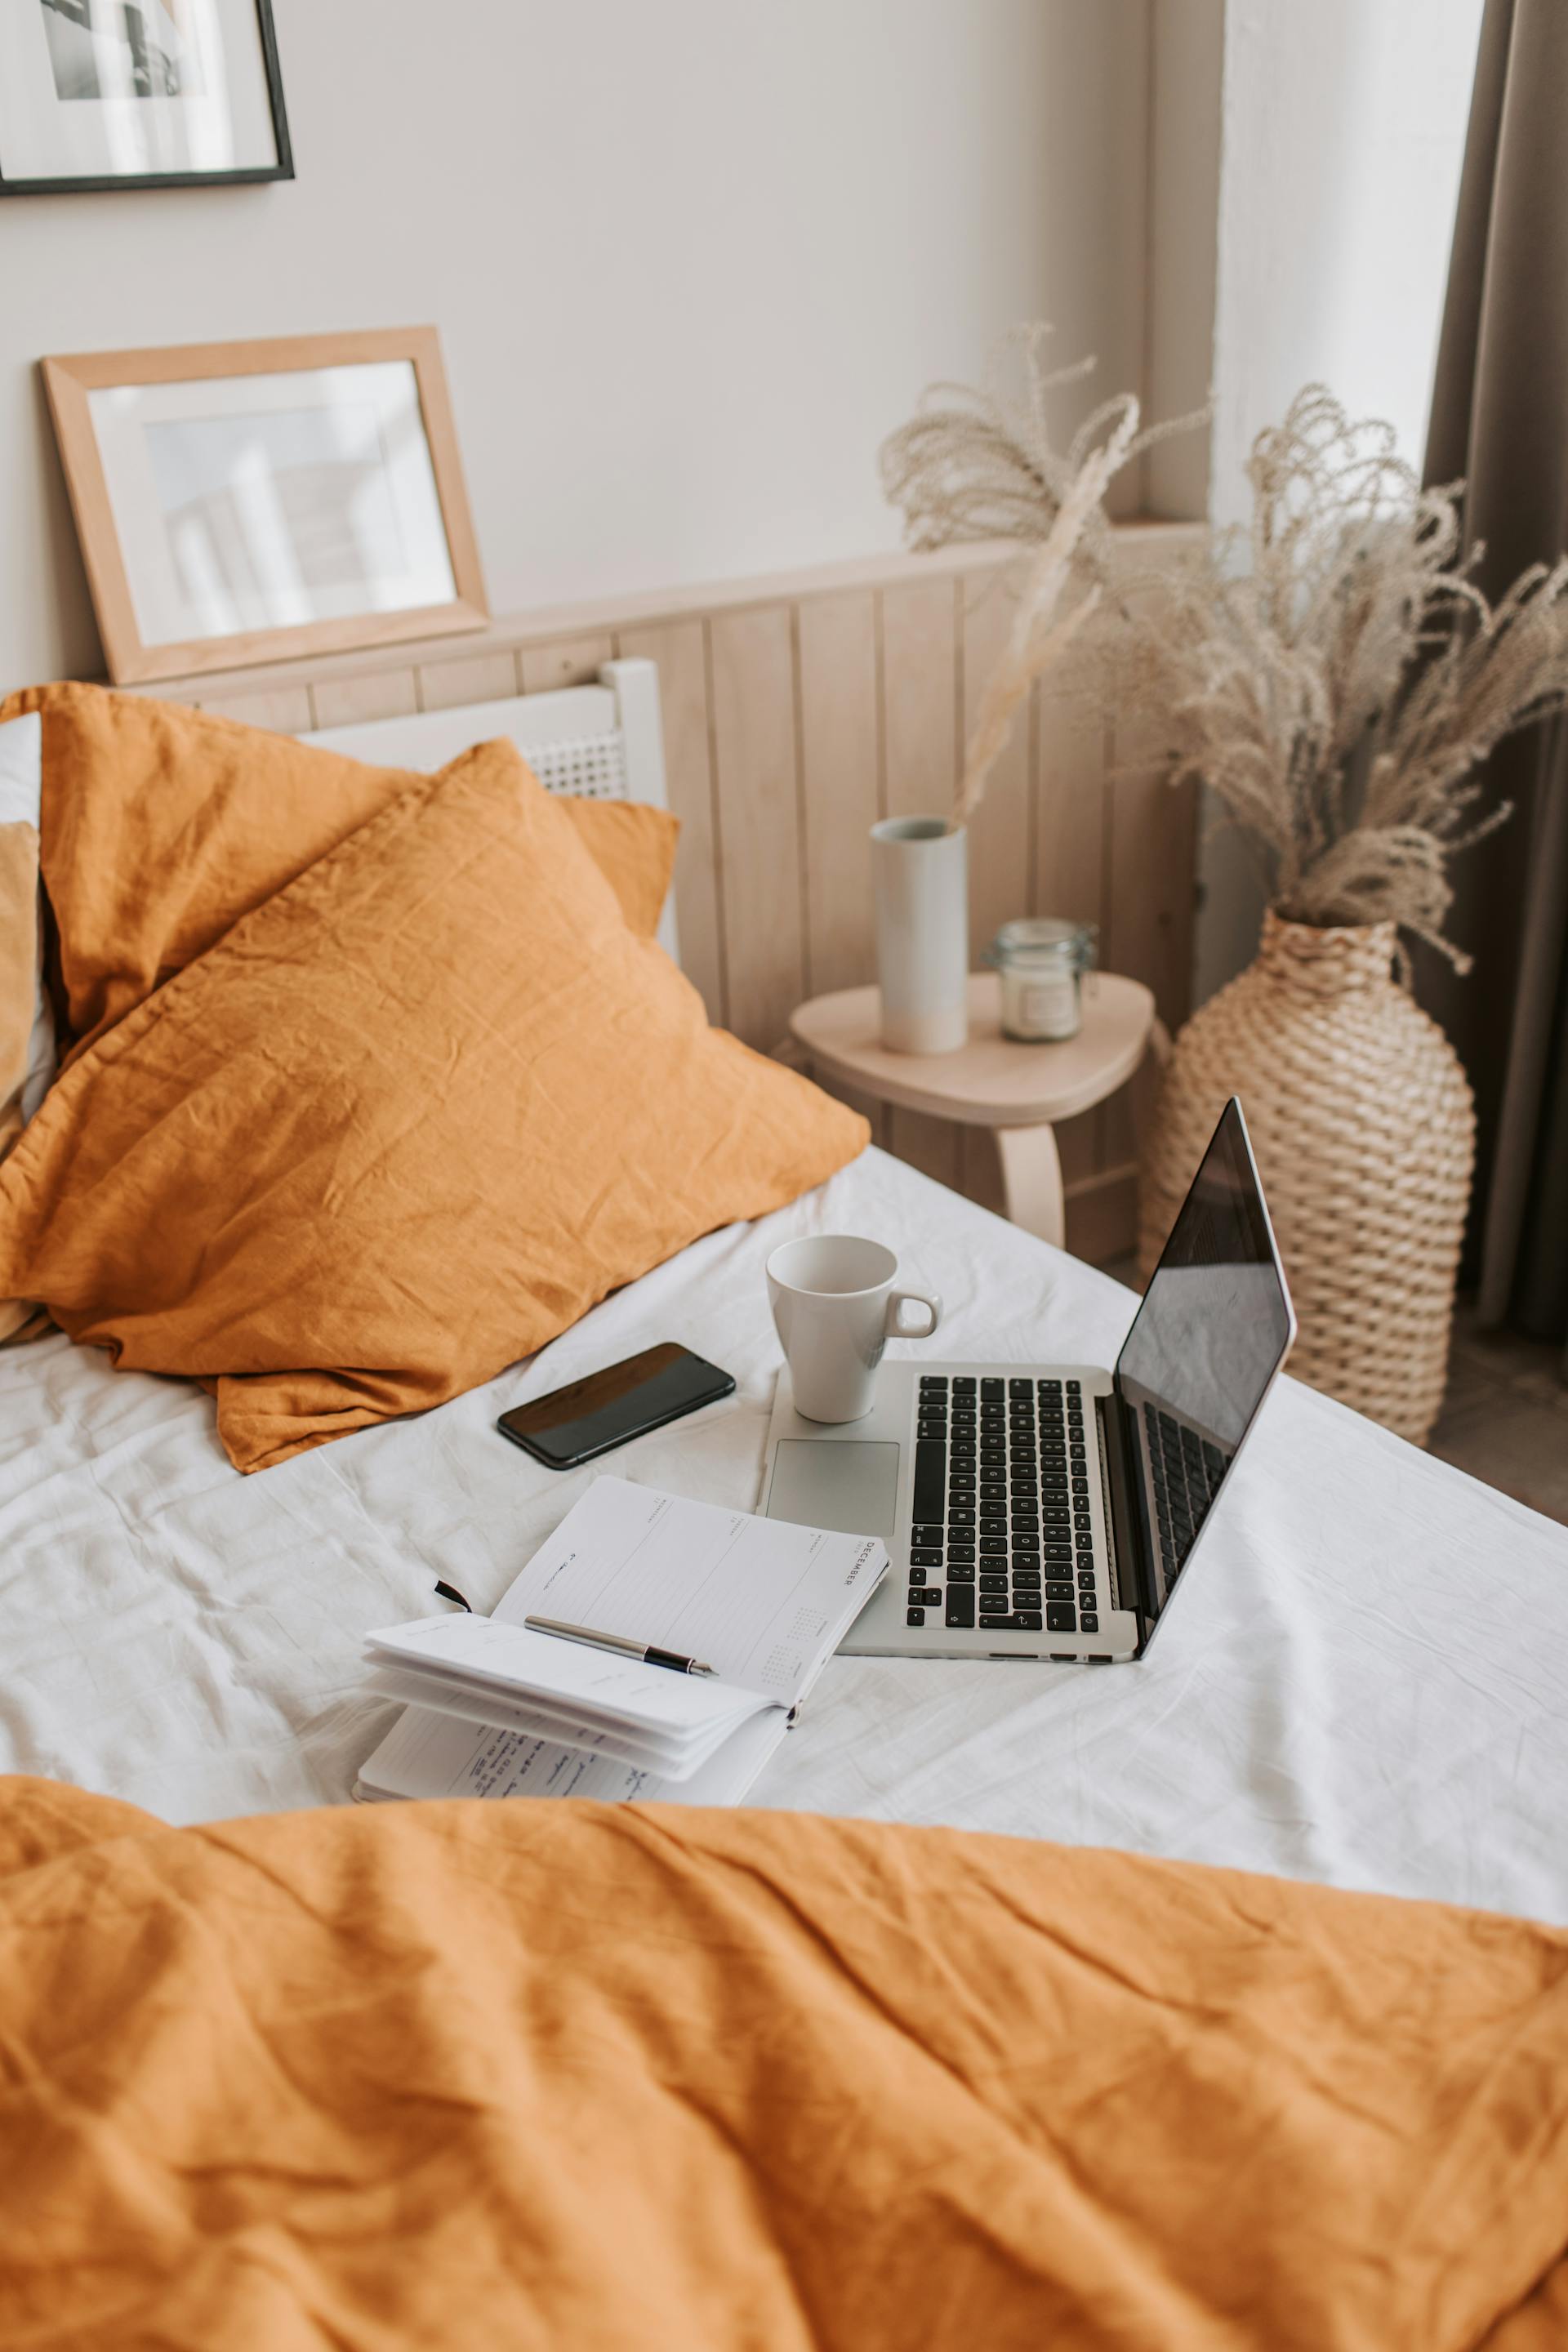 Una taza de café y un portátil sobre una cama | Fuente: Pexels